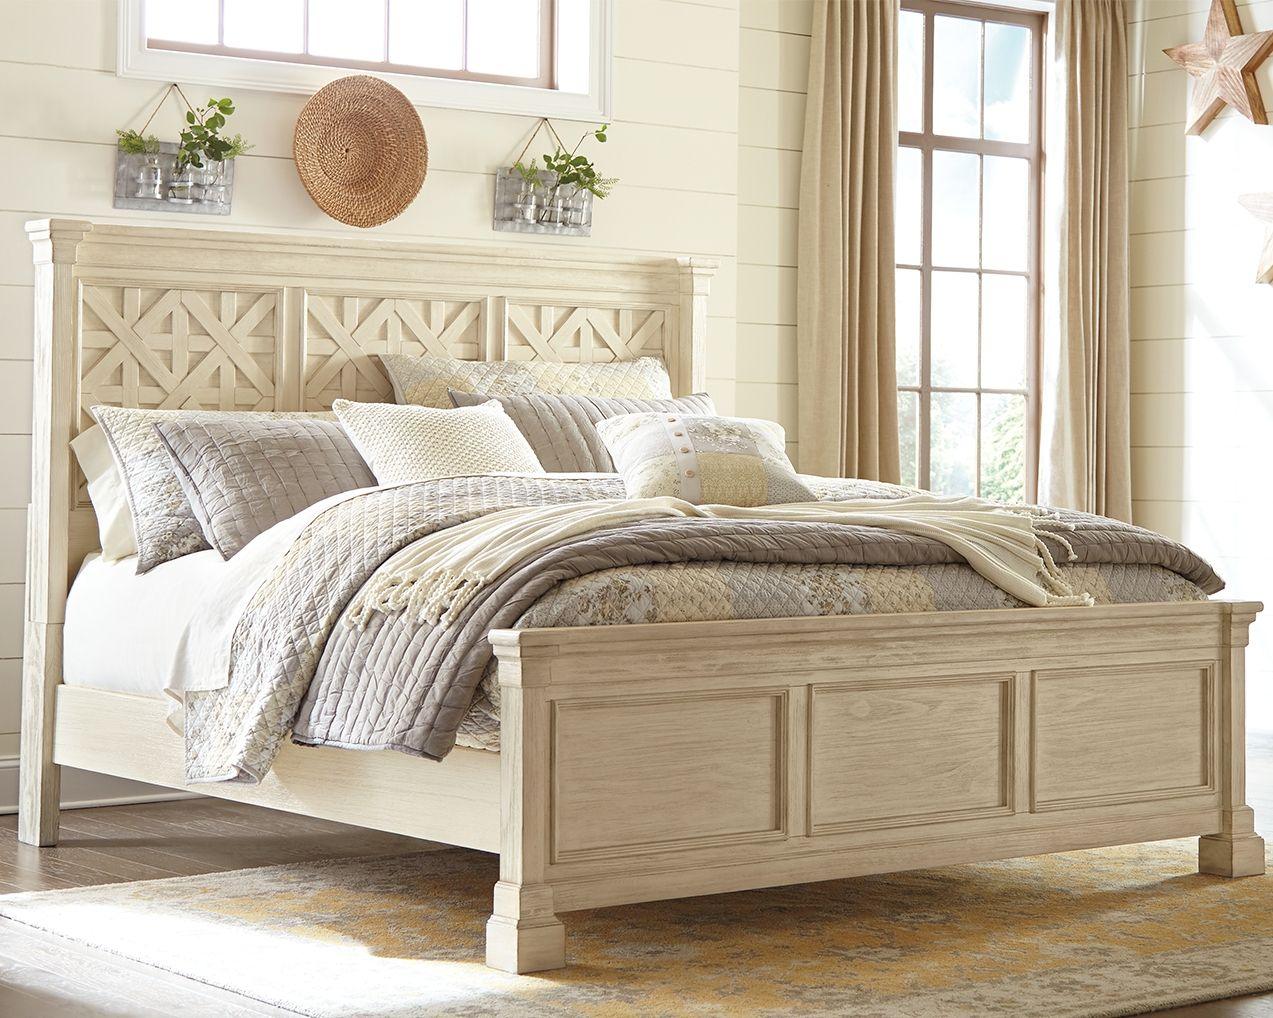 Signature Design by Ashley® - Bolanburg - Lattice Panel Bed - 5th Avenue Furniture